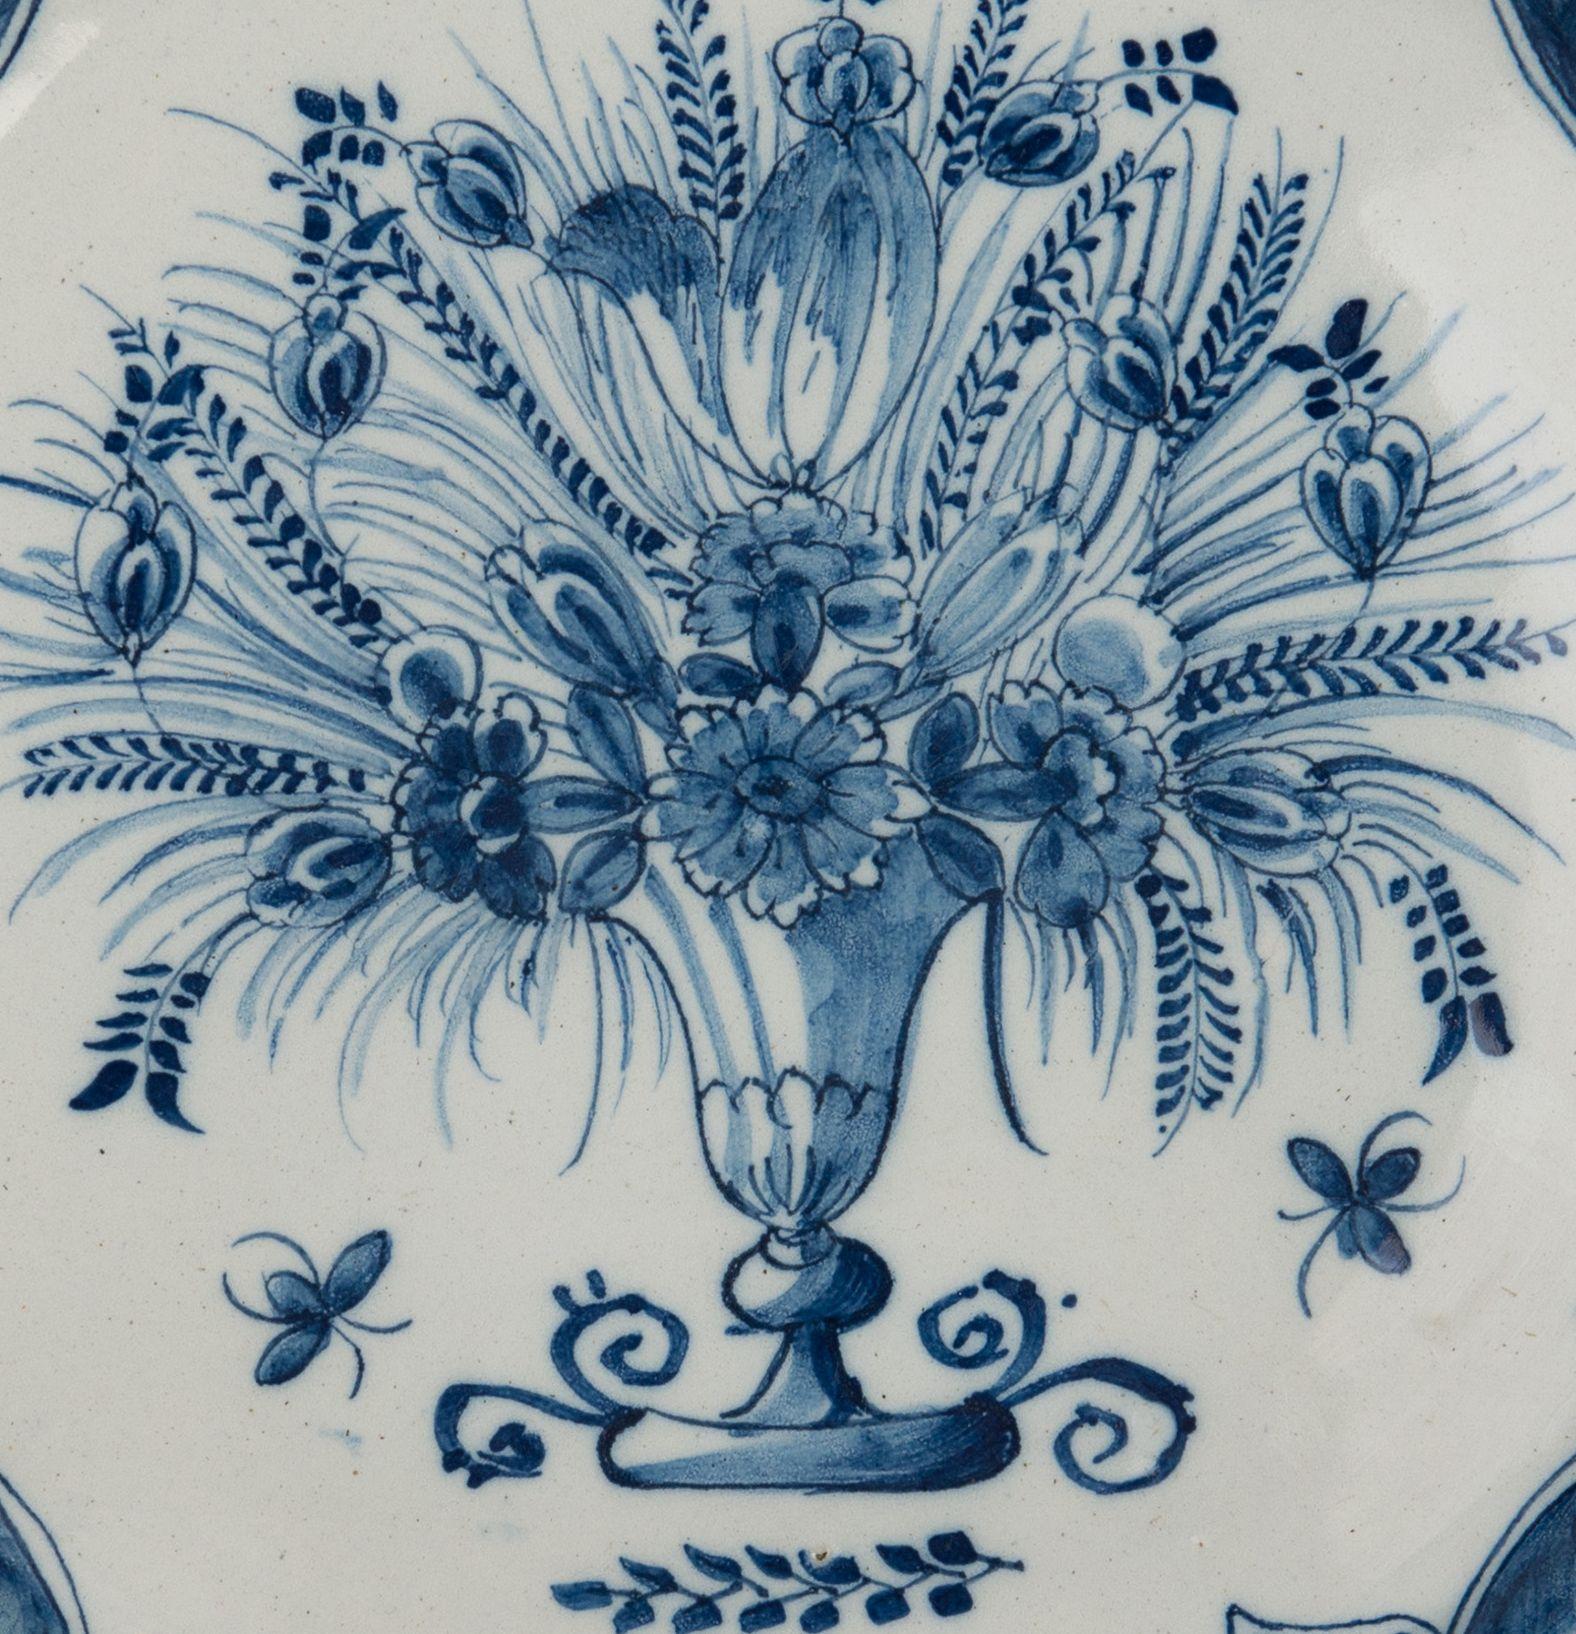 Plat bleu et blanc avec vase à fleurs. Delft, 1740-1760
La poterie des Trois Cloches. Marque : trois cloches

Branch avec un bord festonné peint en bleu montrant un vase avec plusieurs fleurs et branches. Une petite Branch est représentée sous le